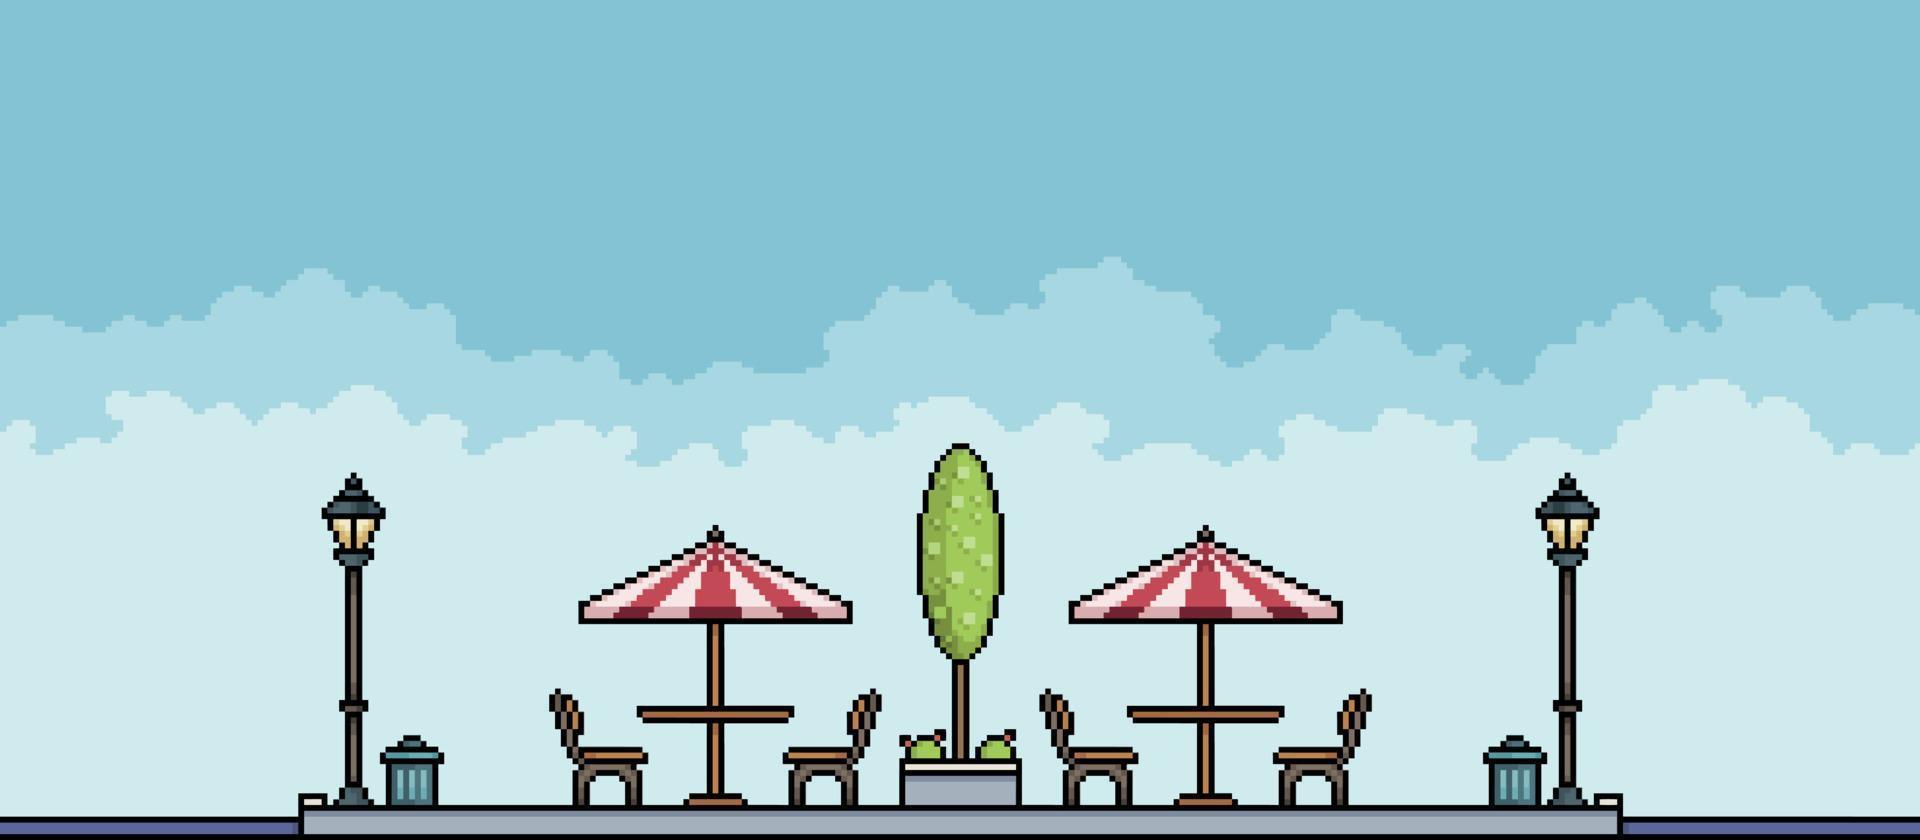 parc de pixels avec arbres, poteaux et tables d'alimentation paysage urbain. fond de paysage urbain pour le jeu 8bit vecteur